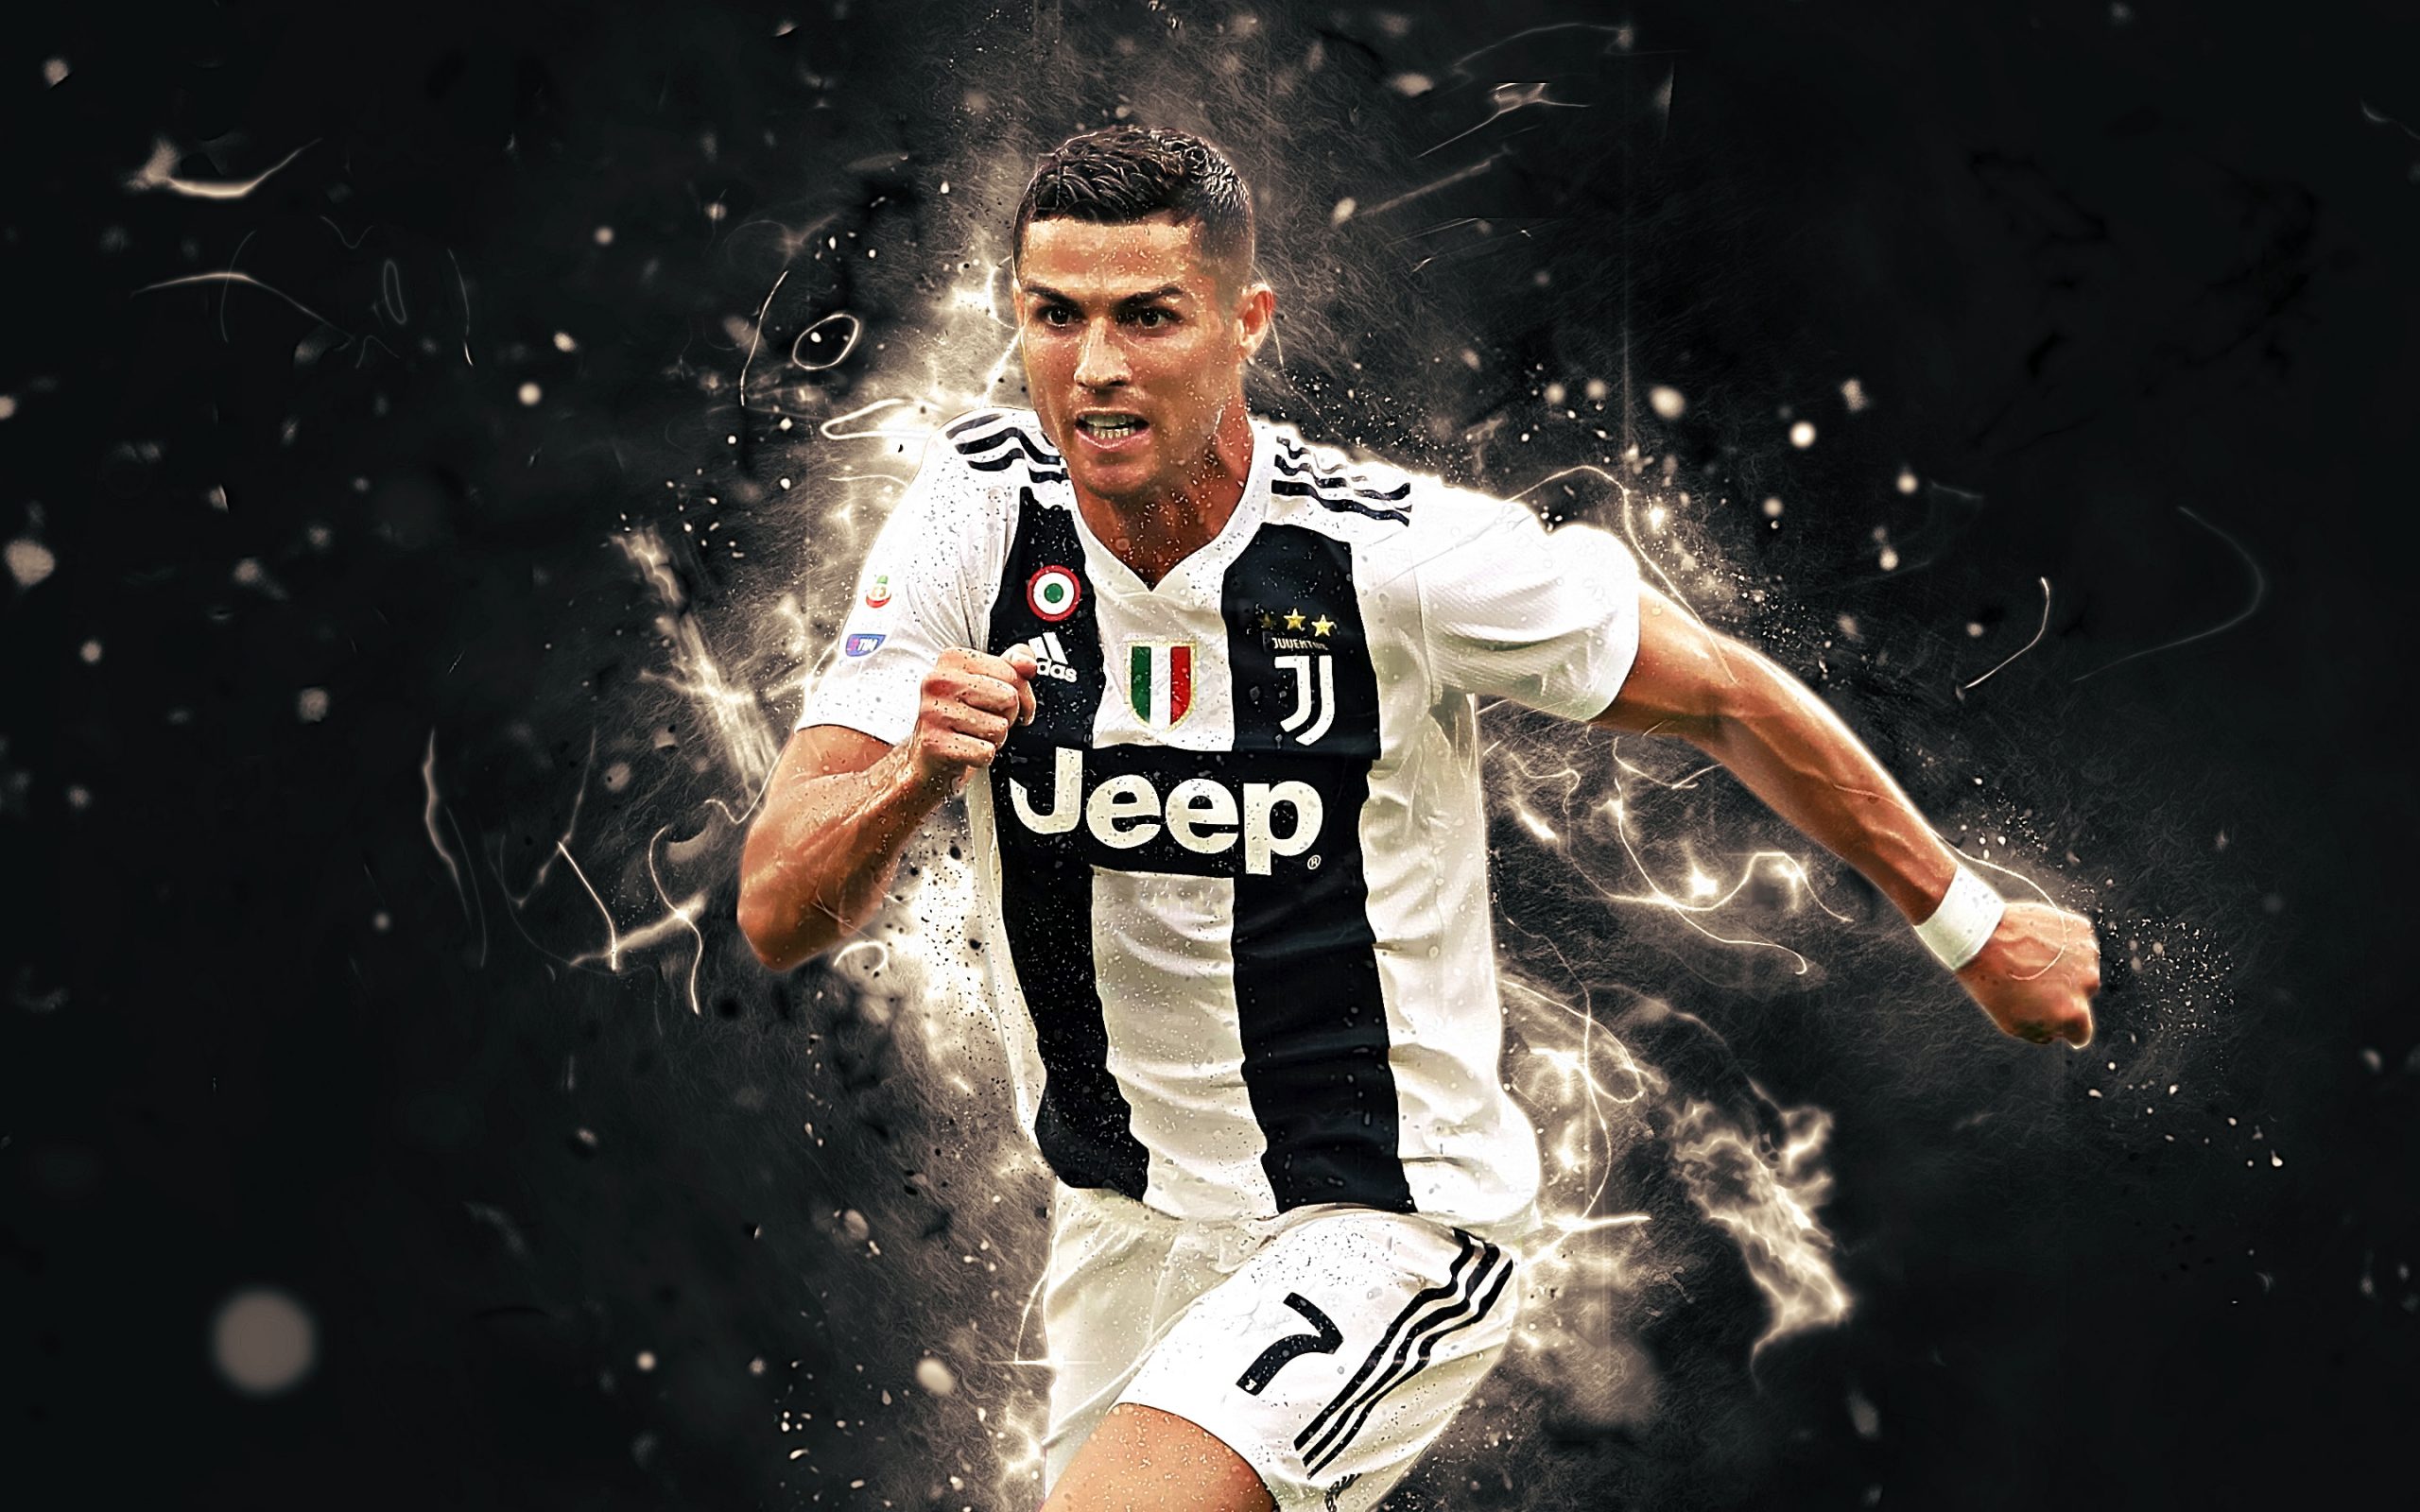 Ảnh Ronaldo 4K  Hình nền Ronaldo ngầu đẹp nhất 2023